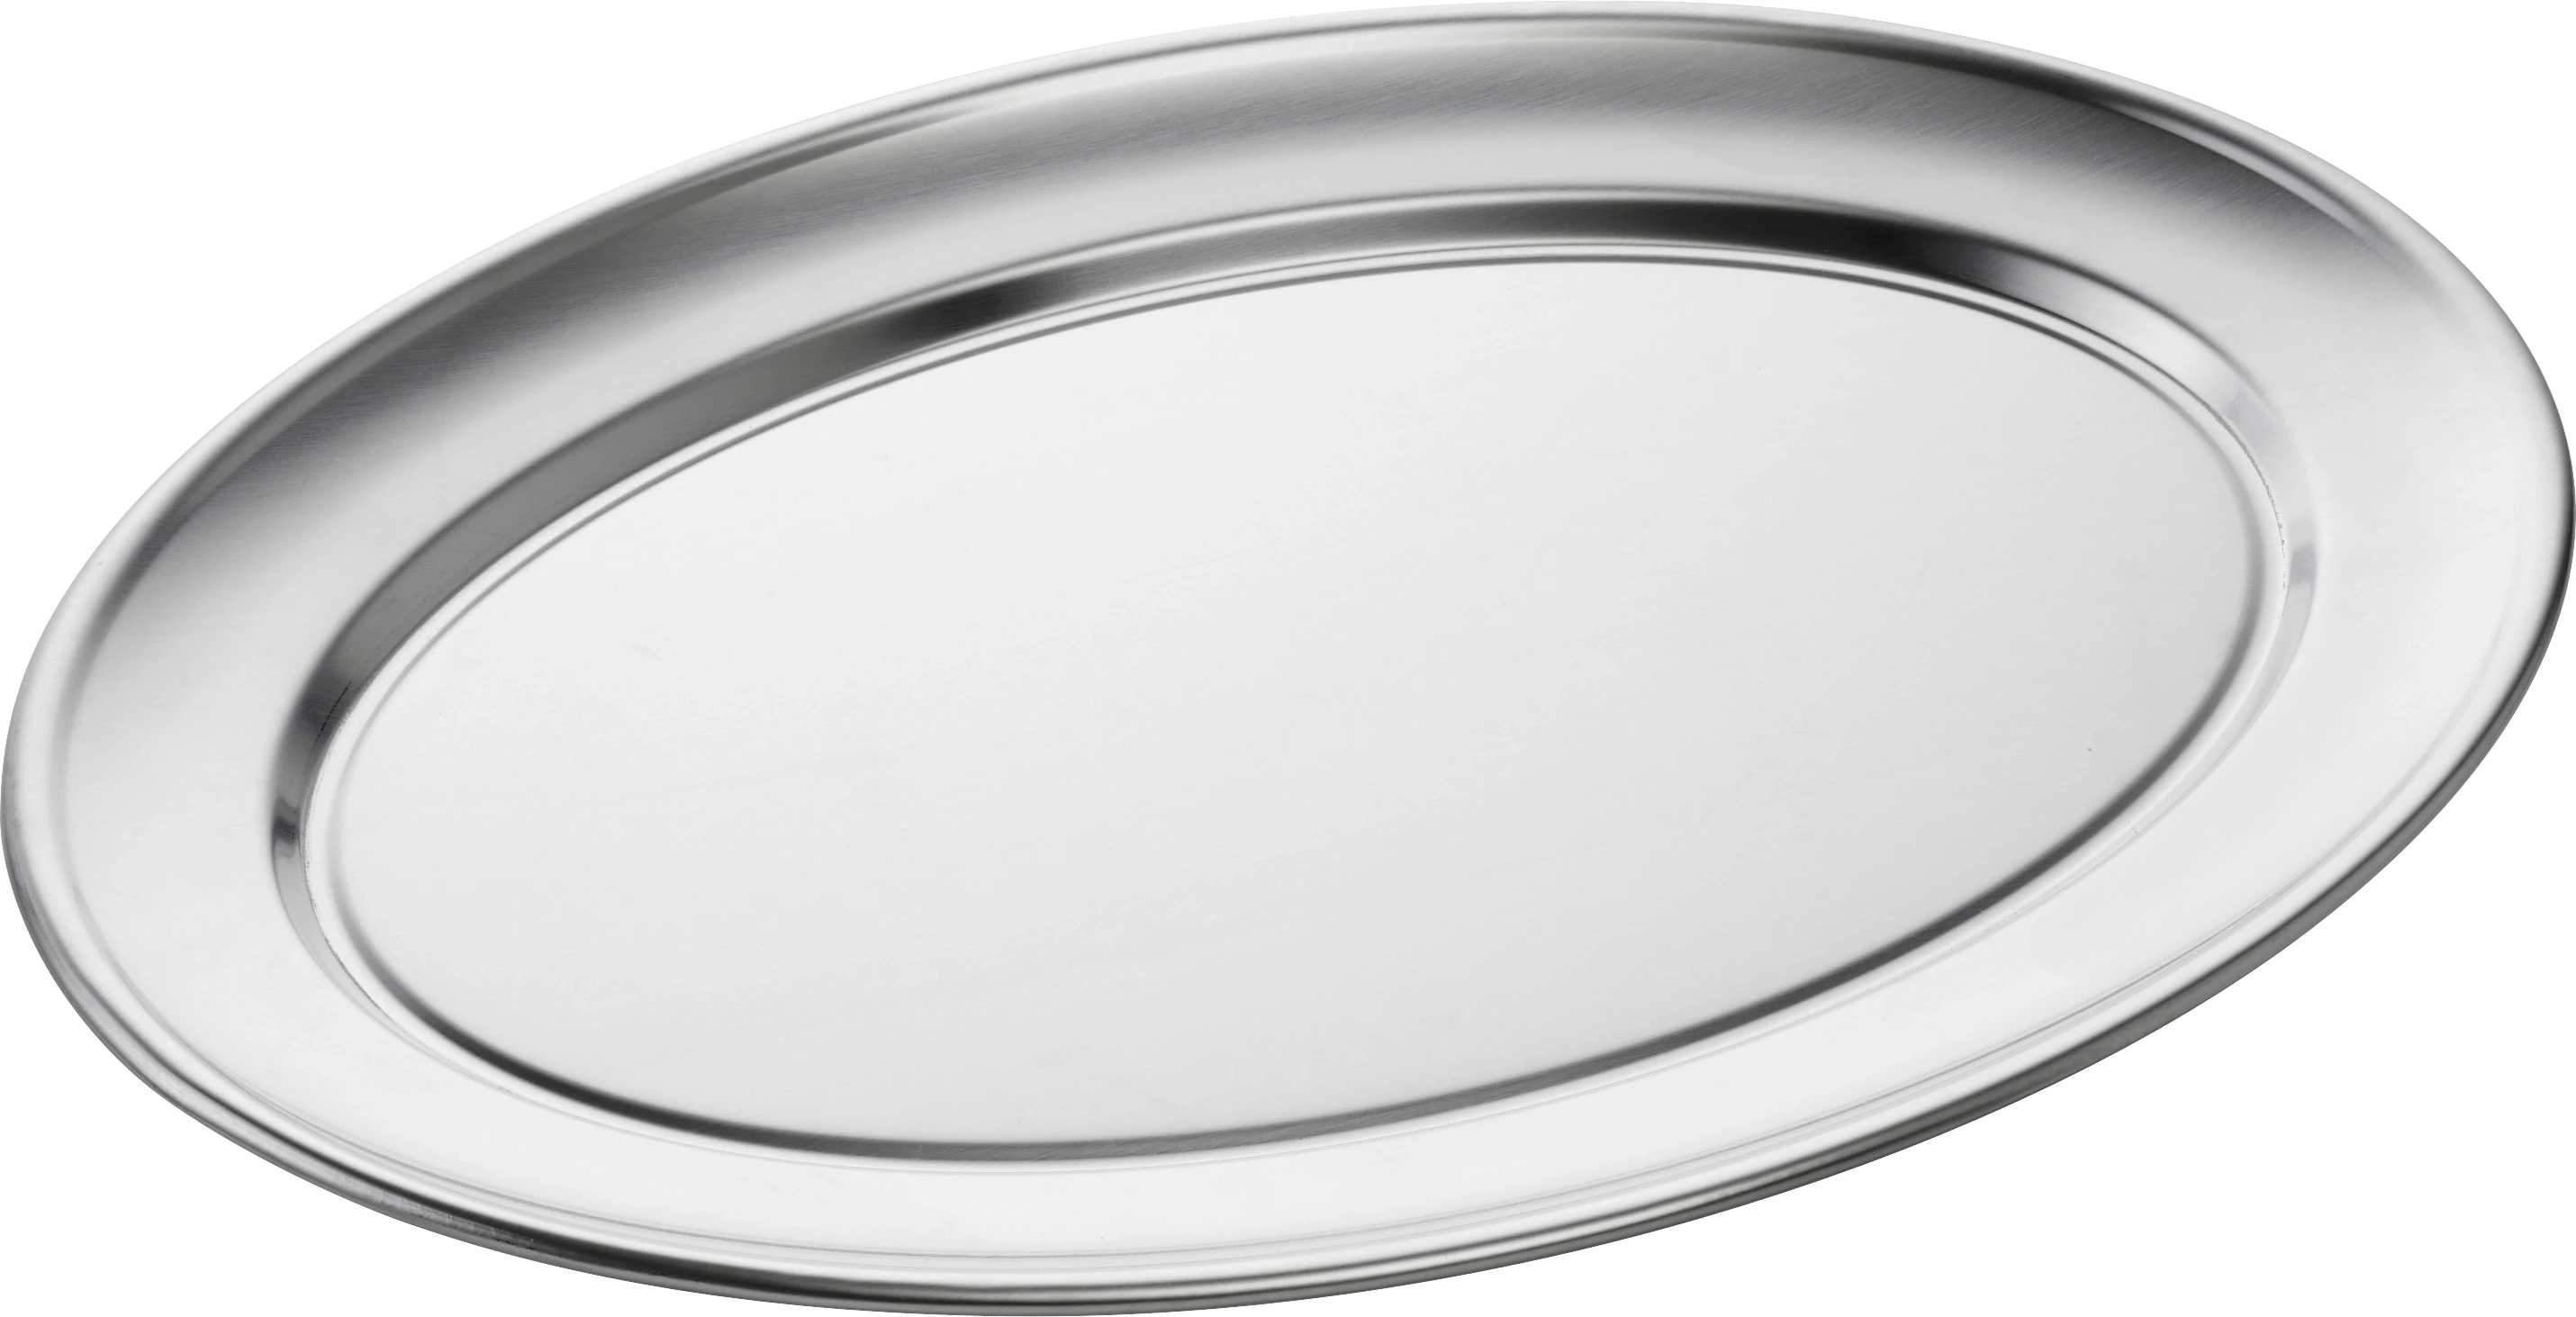 Steel-function fad, ovalt, blank, 45 x 32 cm